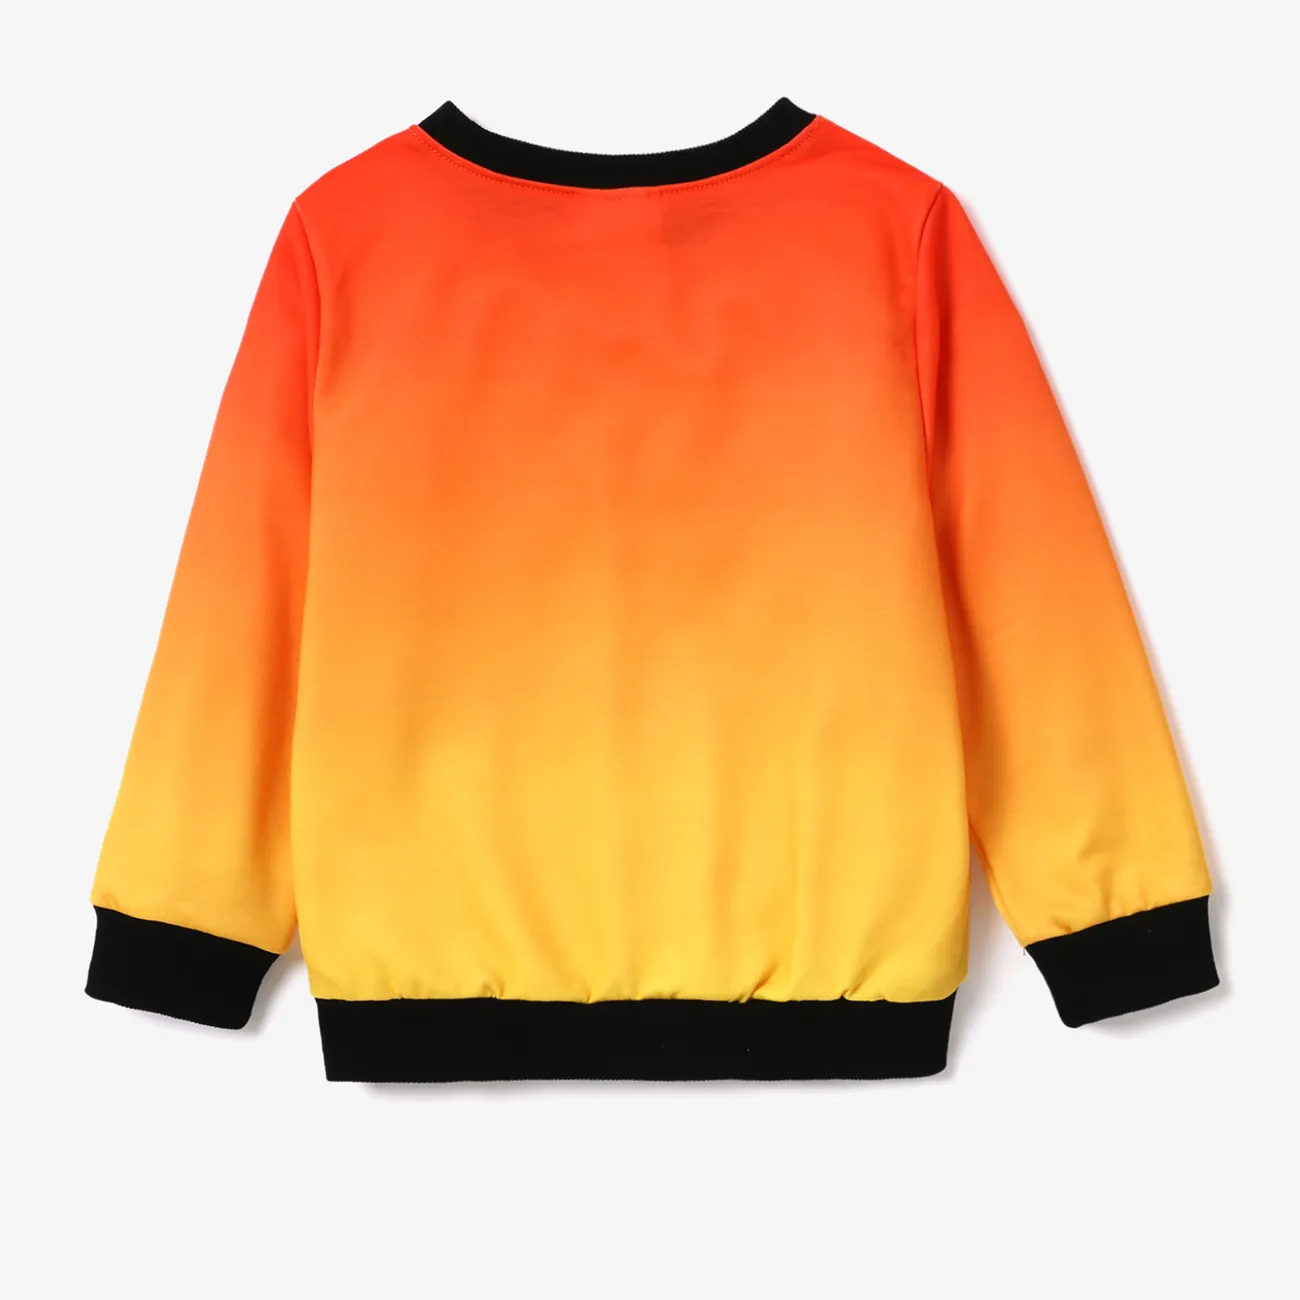 Helfer auf vier Pfoten 2 Stück Kleinkinder Jungen Kindlich Sweatshirt-Sets Orange Gelb big image 1